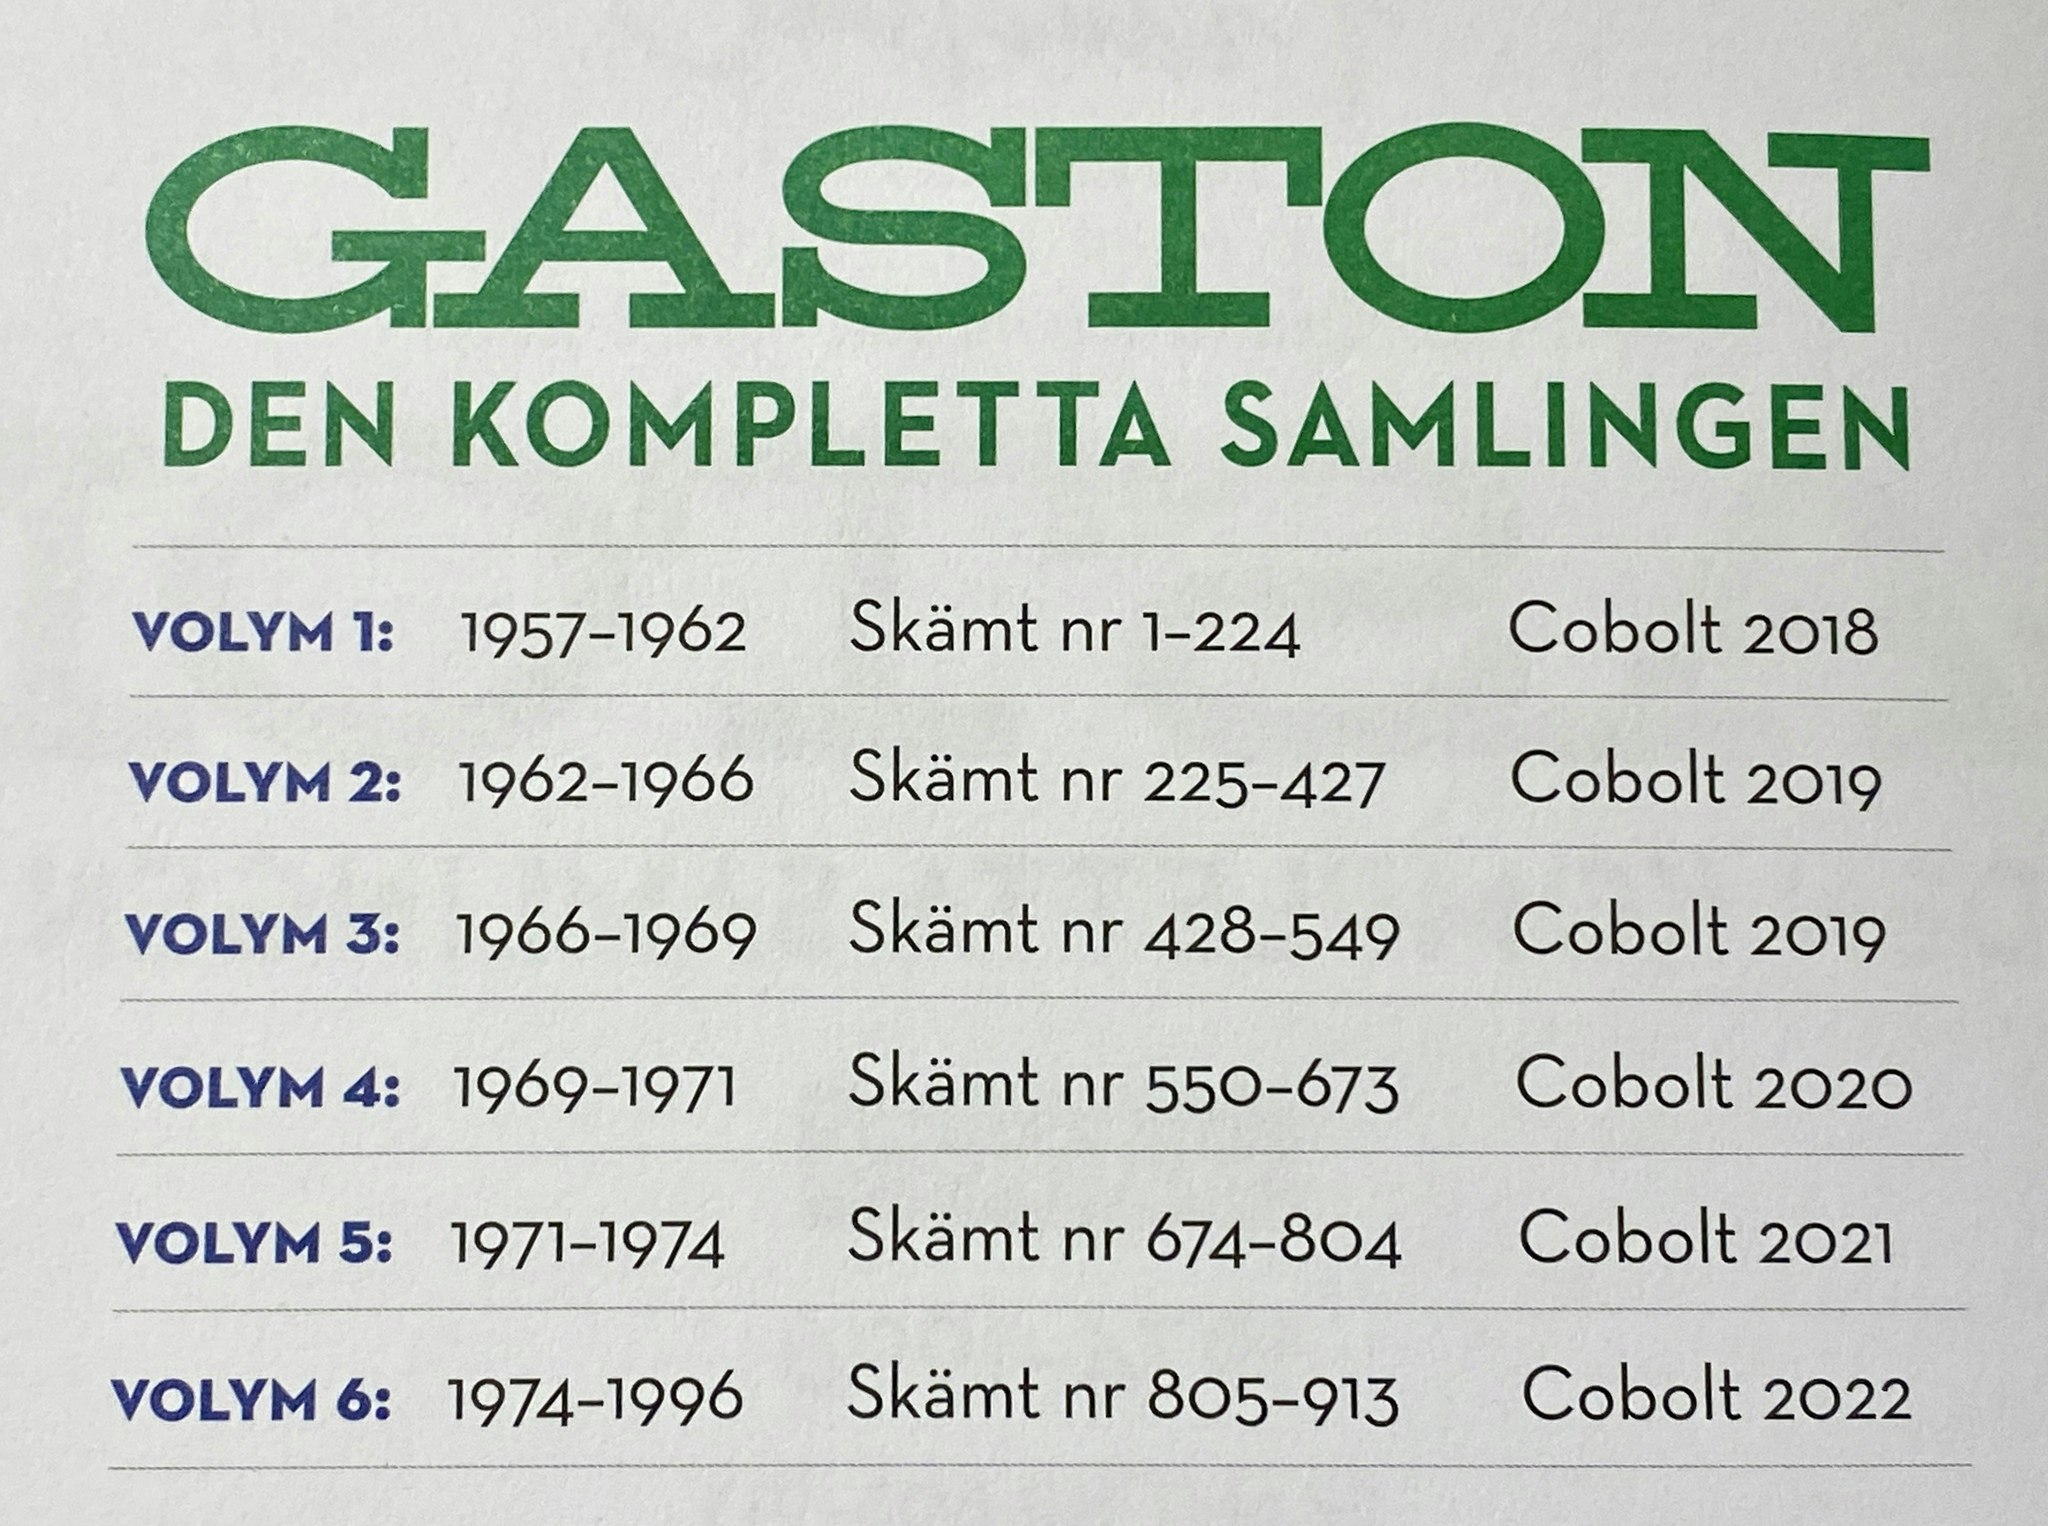 GASTON: DEN KOMPLETTA SAMLINGEN 1, 1957-1962